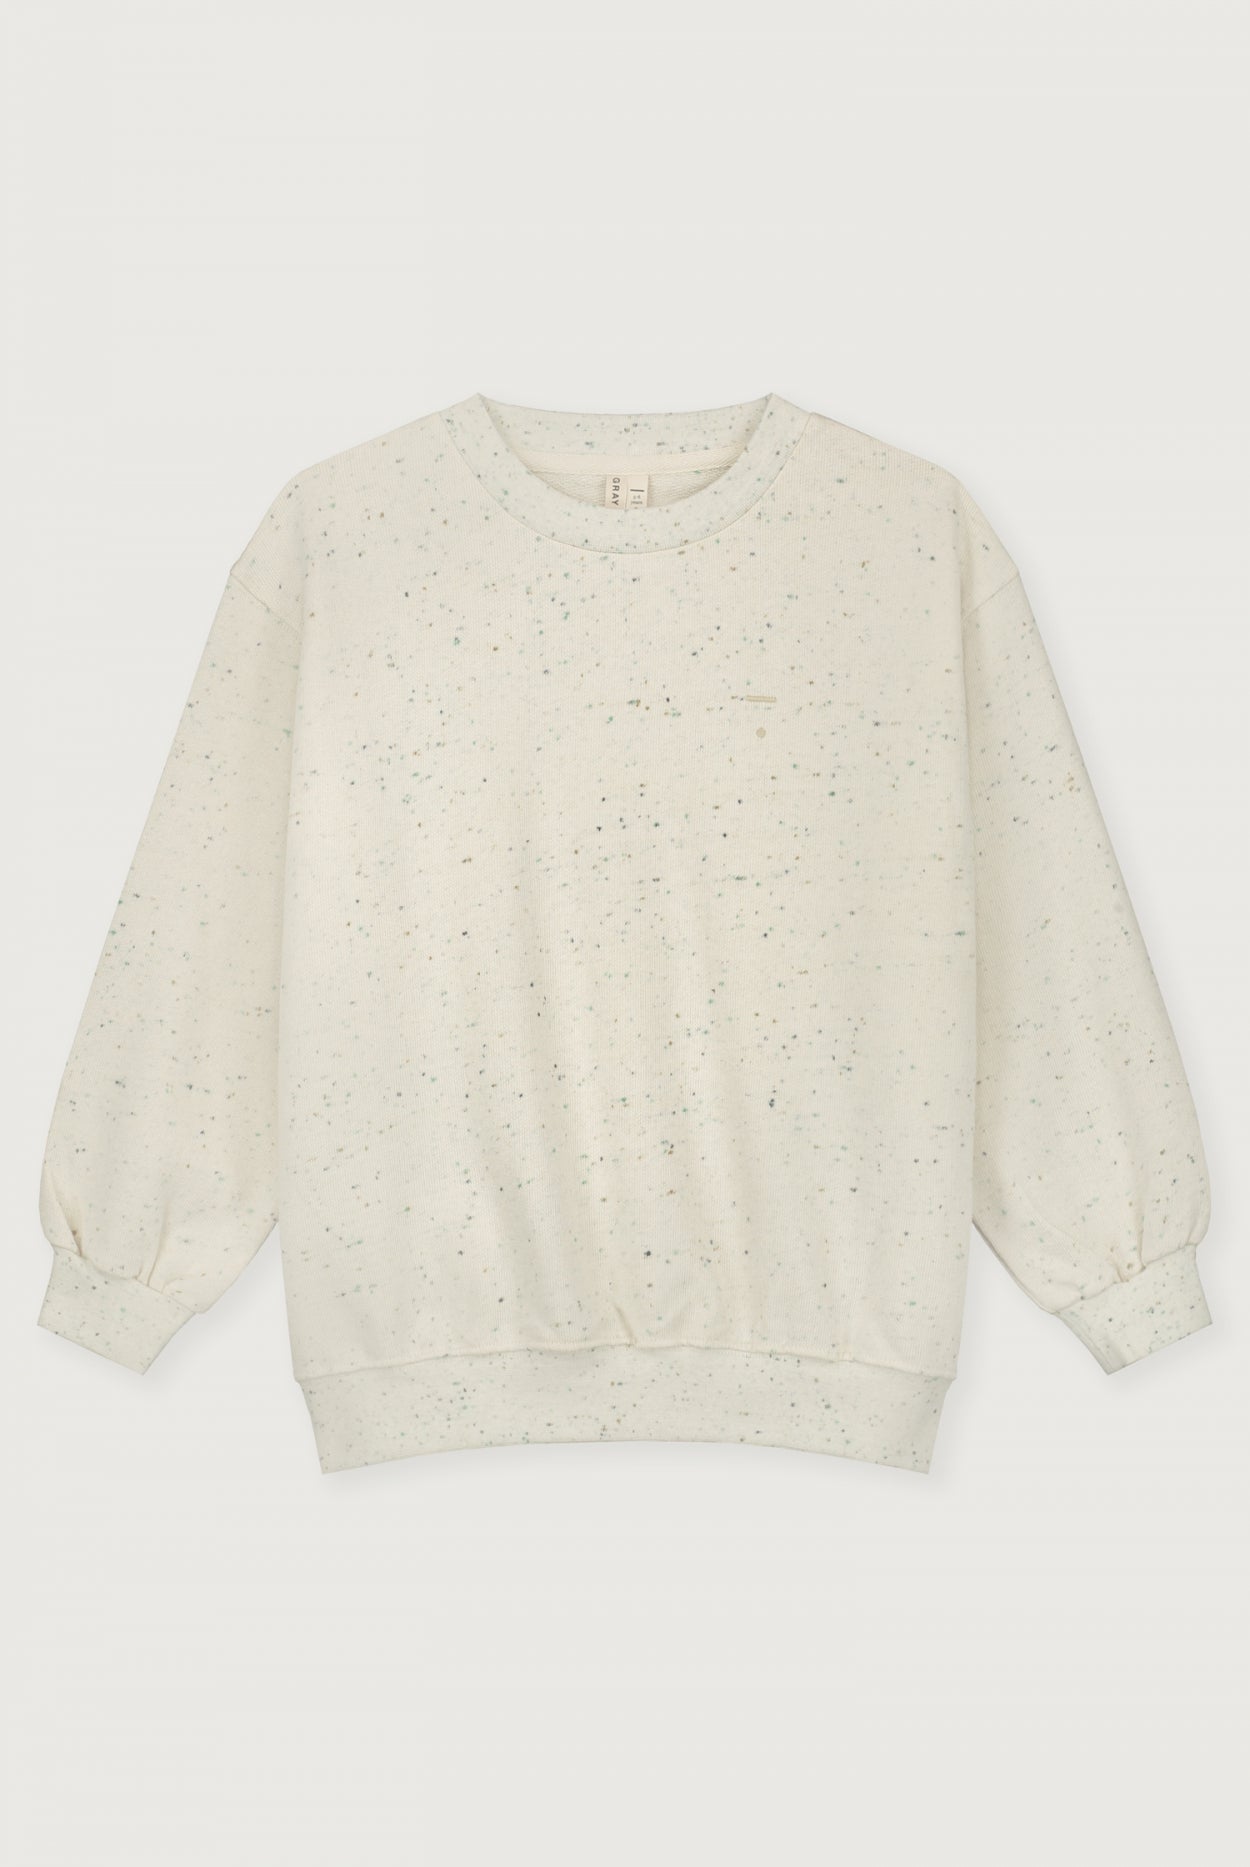 Dropped Shoulder Sweater | Sprinkles